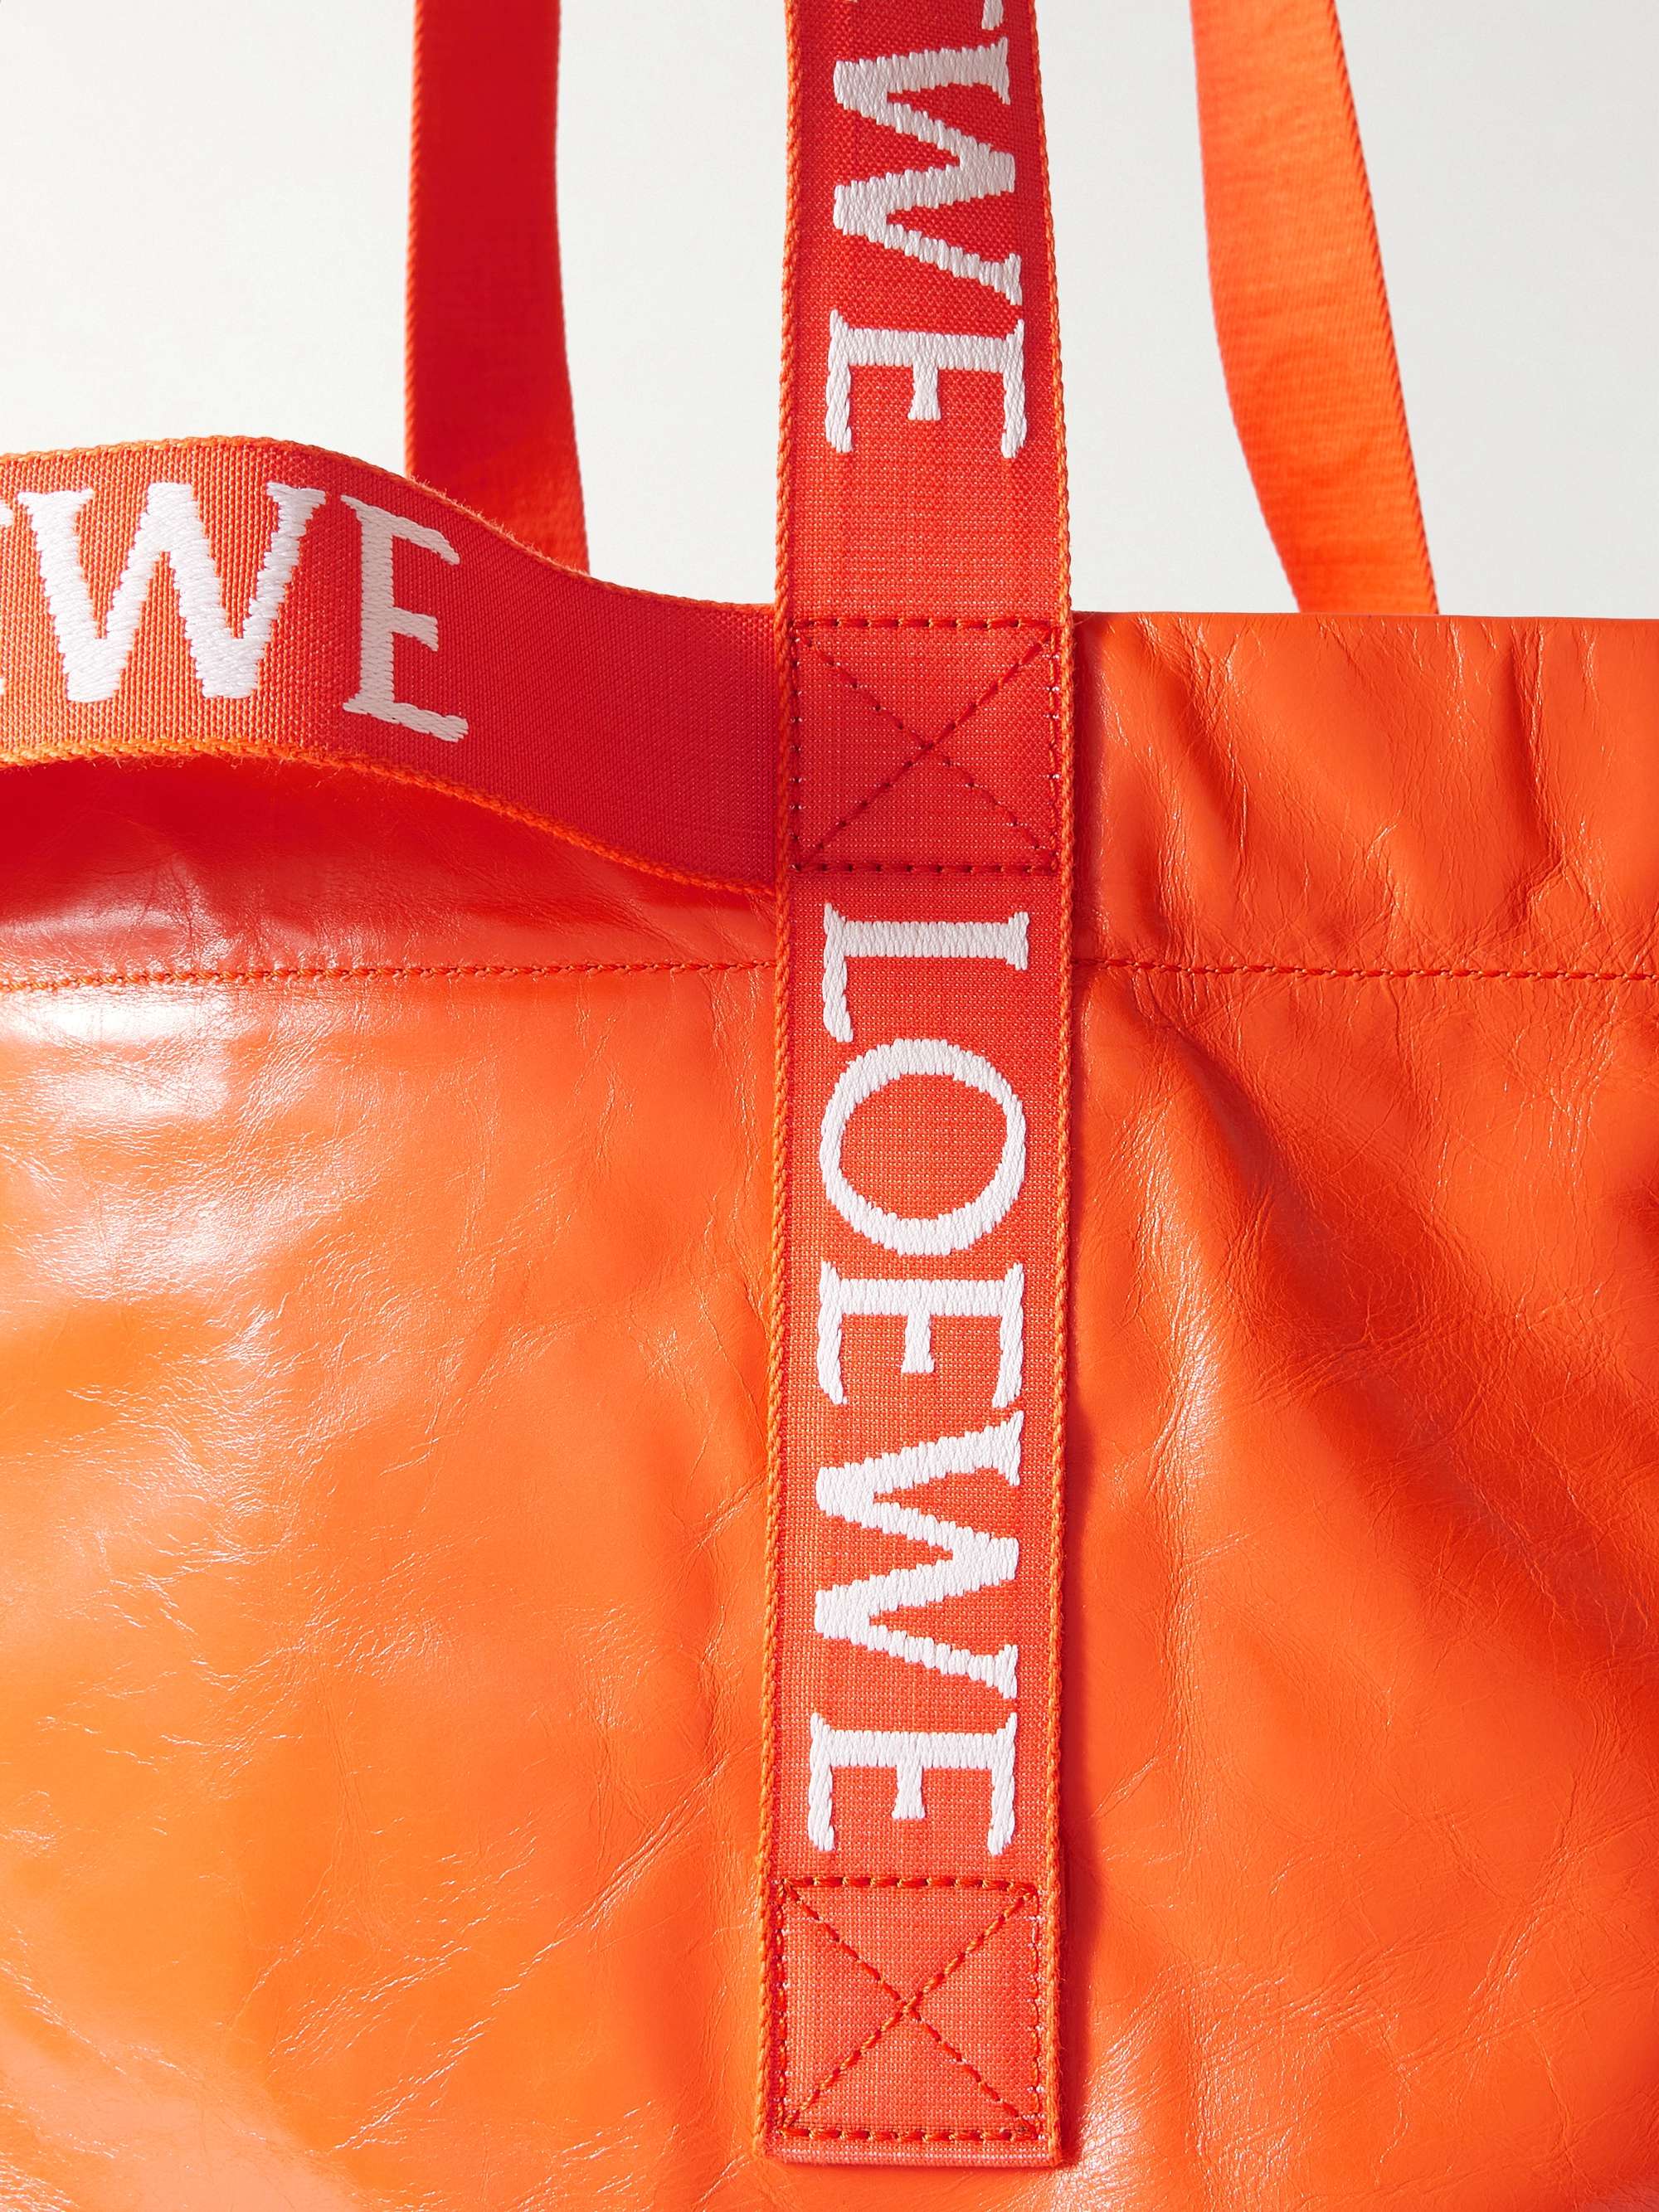 LOEWE Distressed Leather Tote Bag